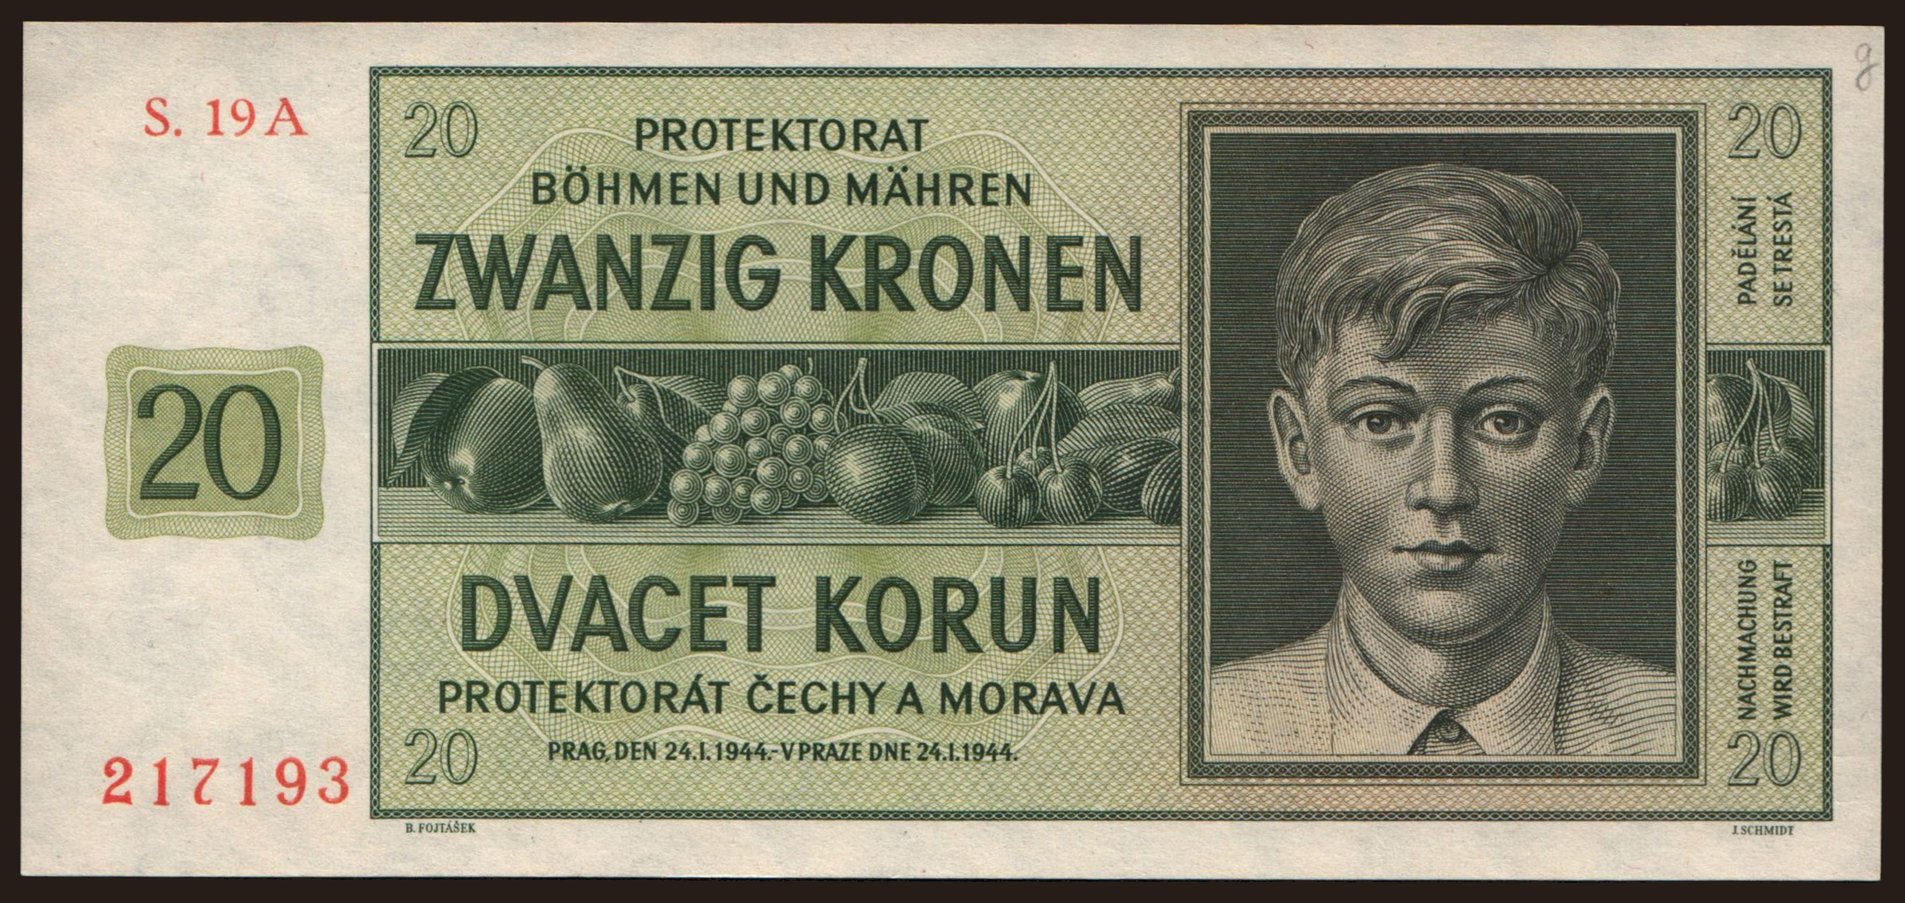 10 korun, 1942